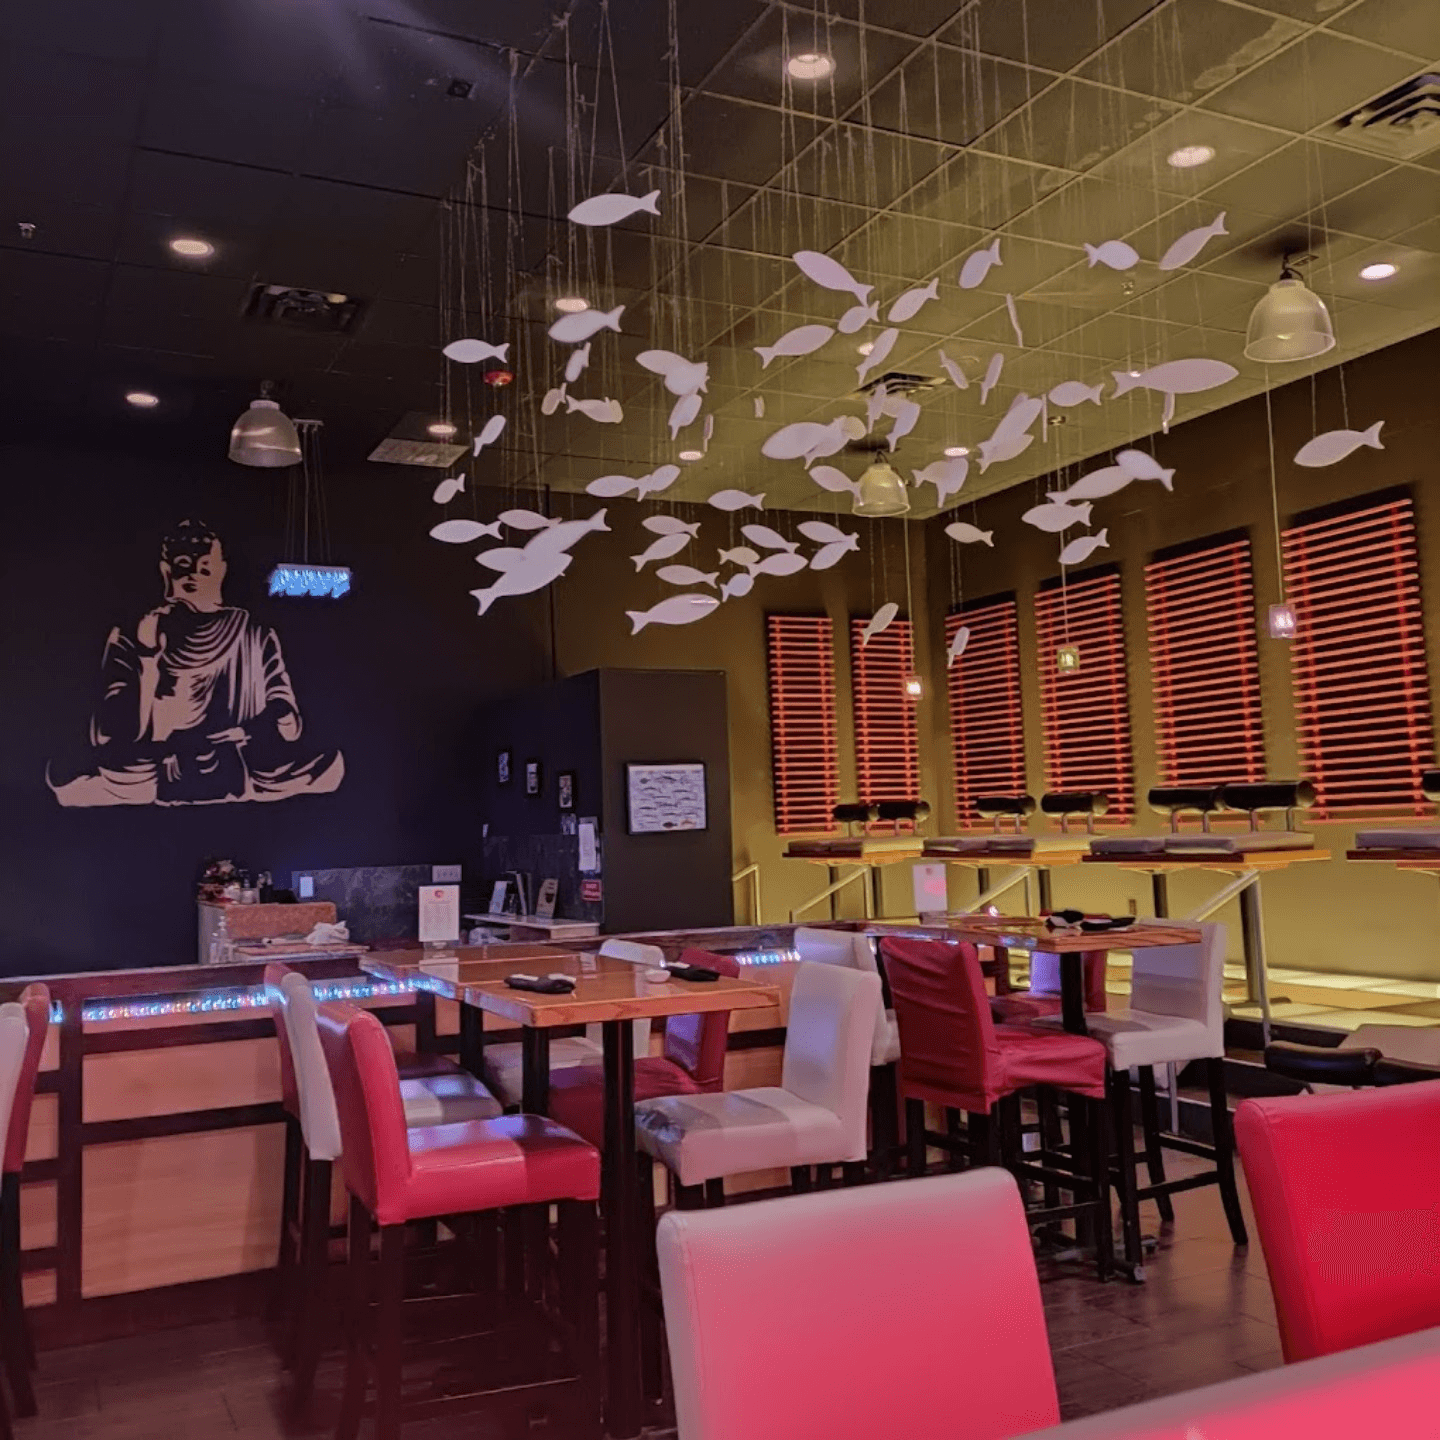 Raku Sushi & Lounge